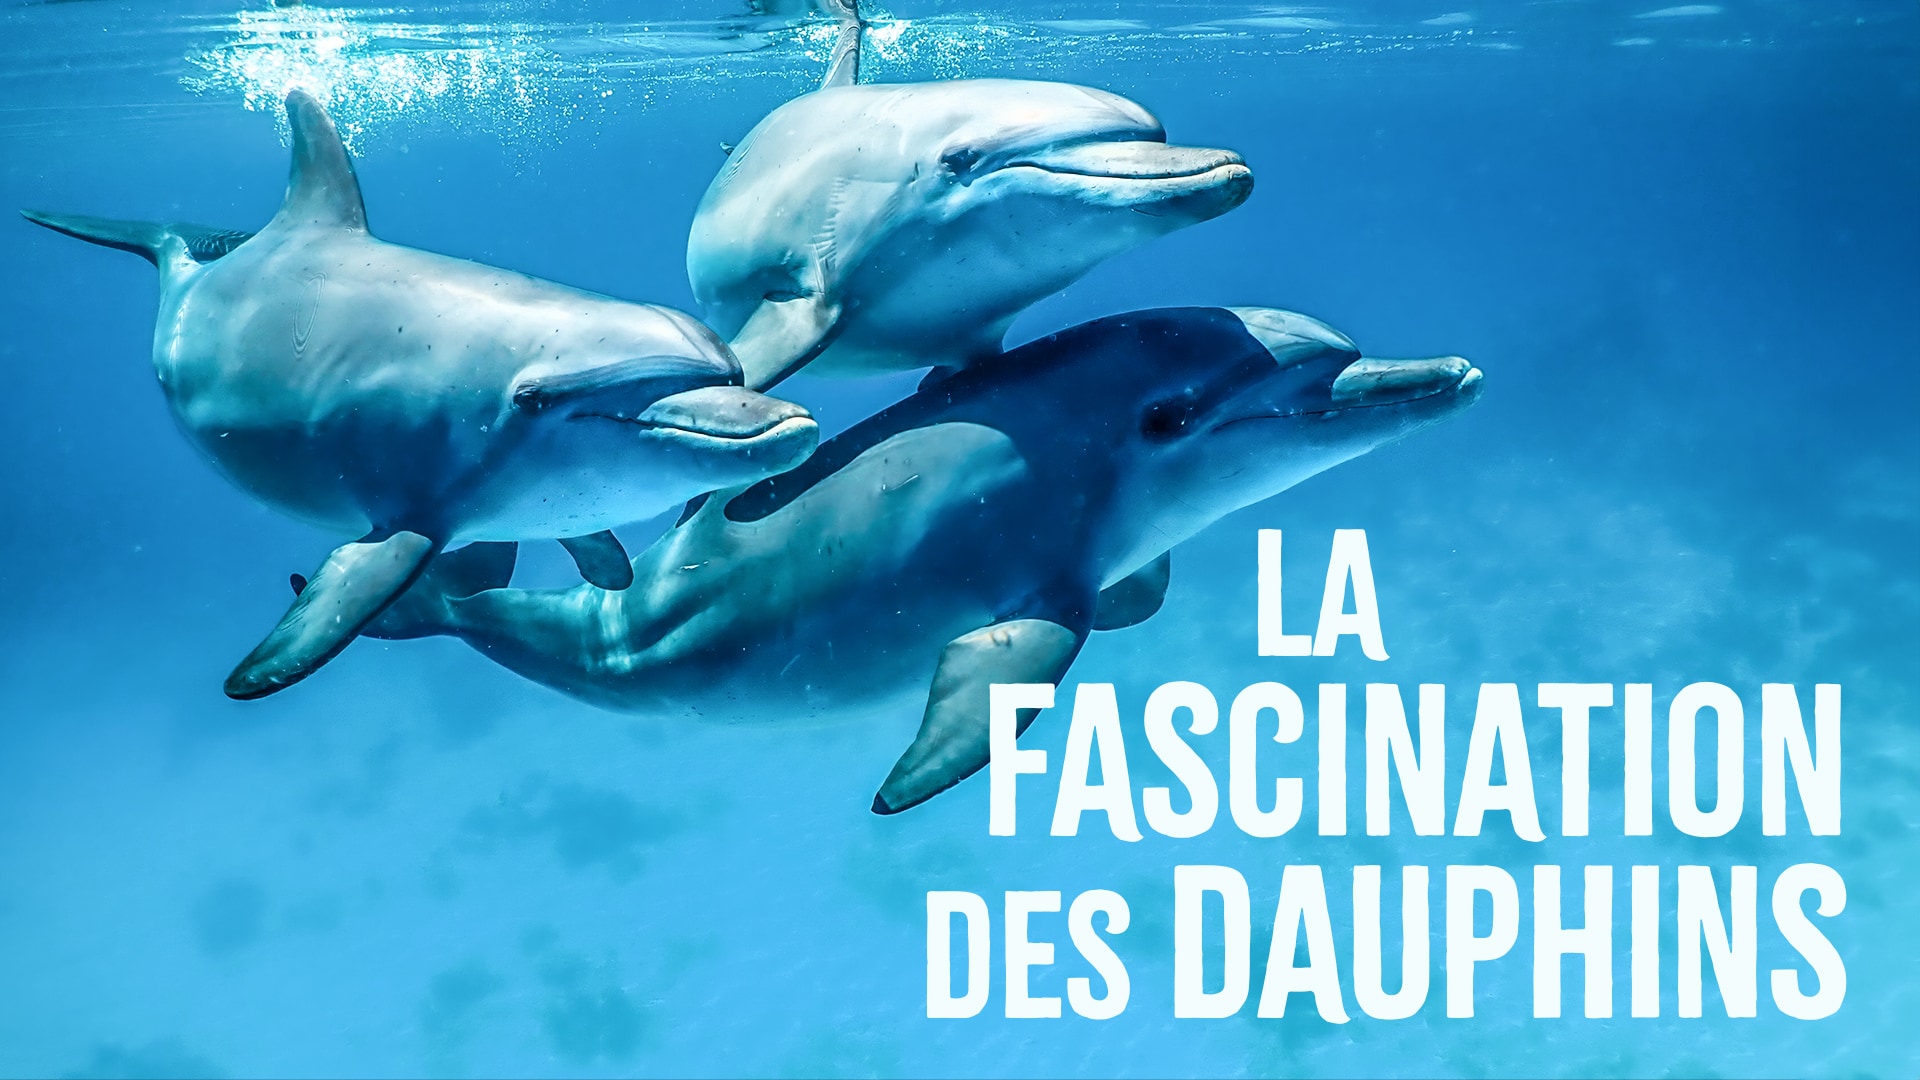 La fascination des dauphins 